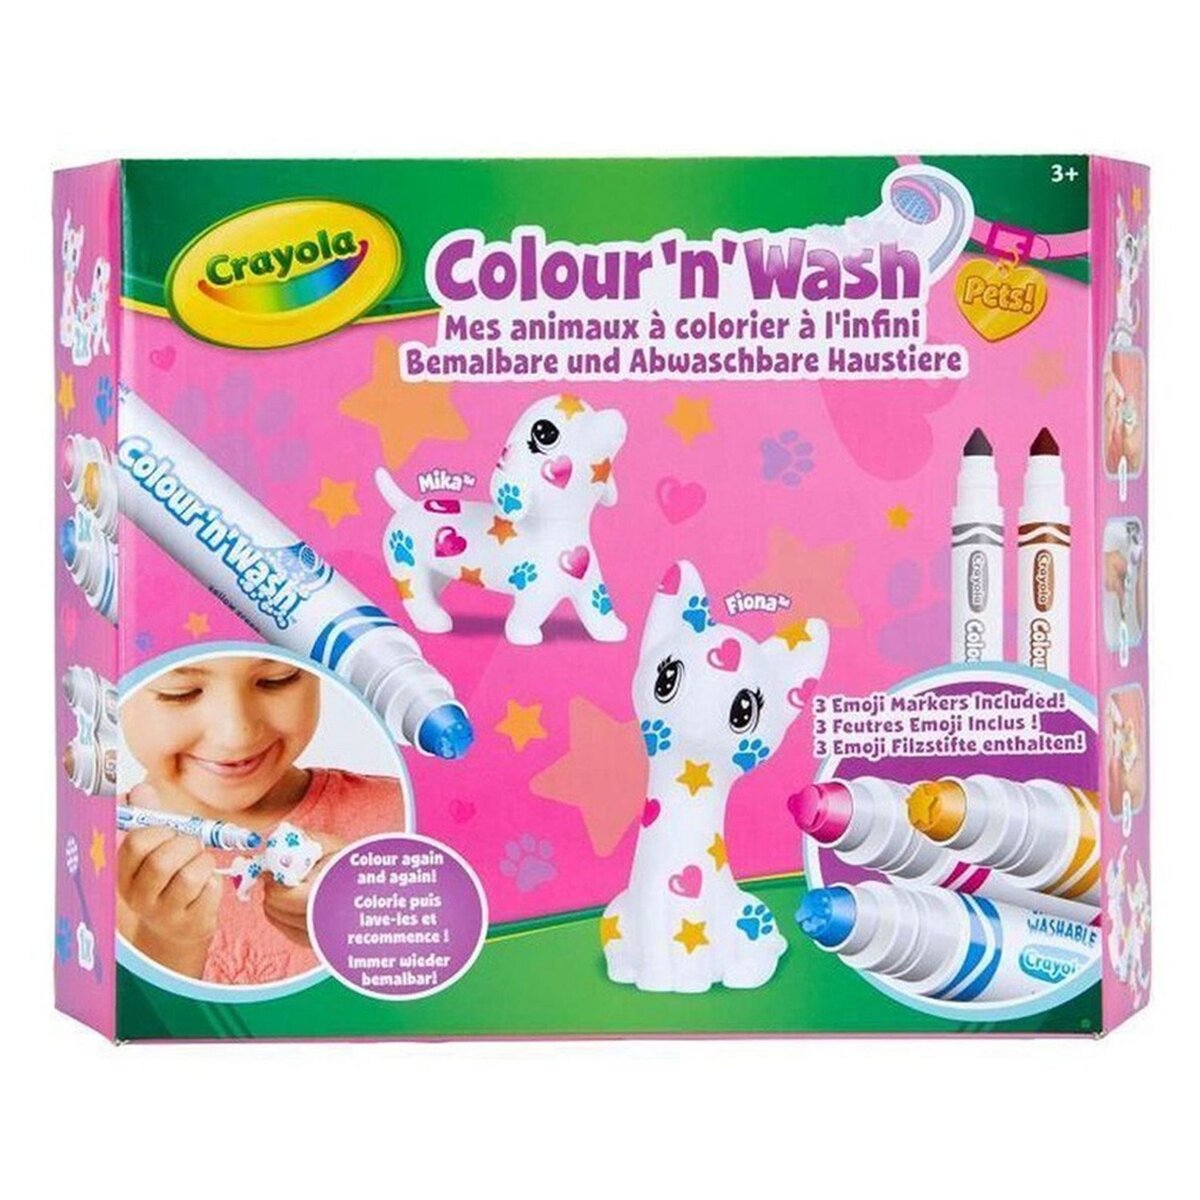 GOLIATH Crayola Colour'n'Wash Pets Mess animaux à colorier à l'infini 